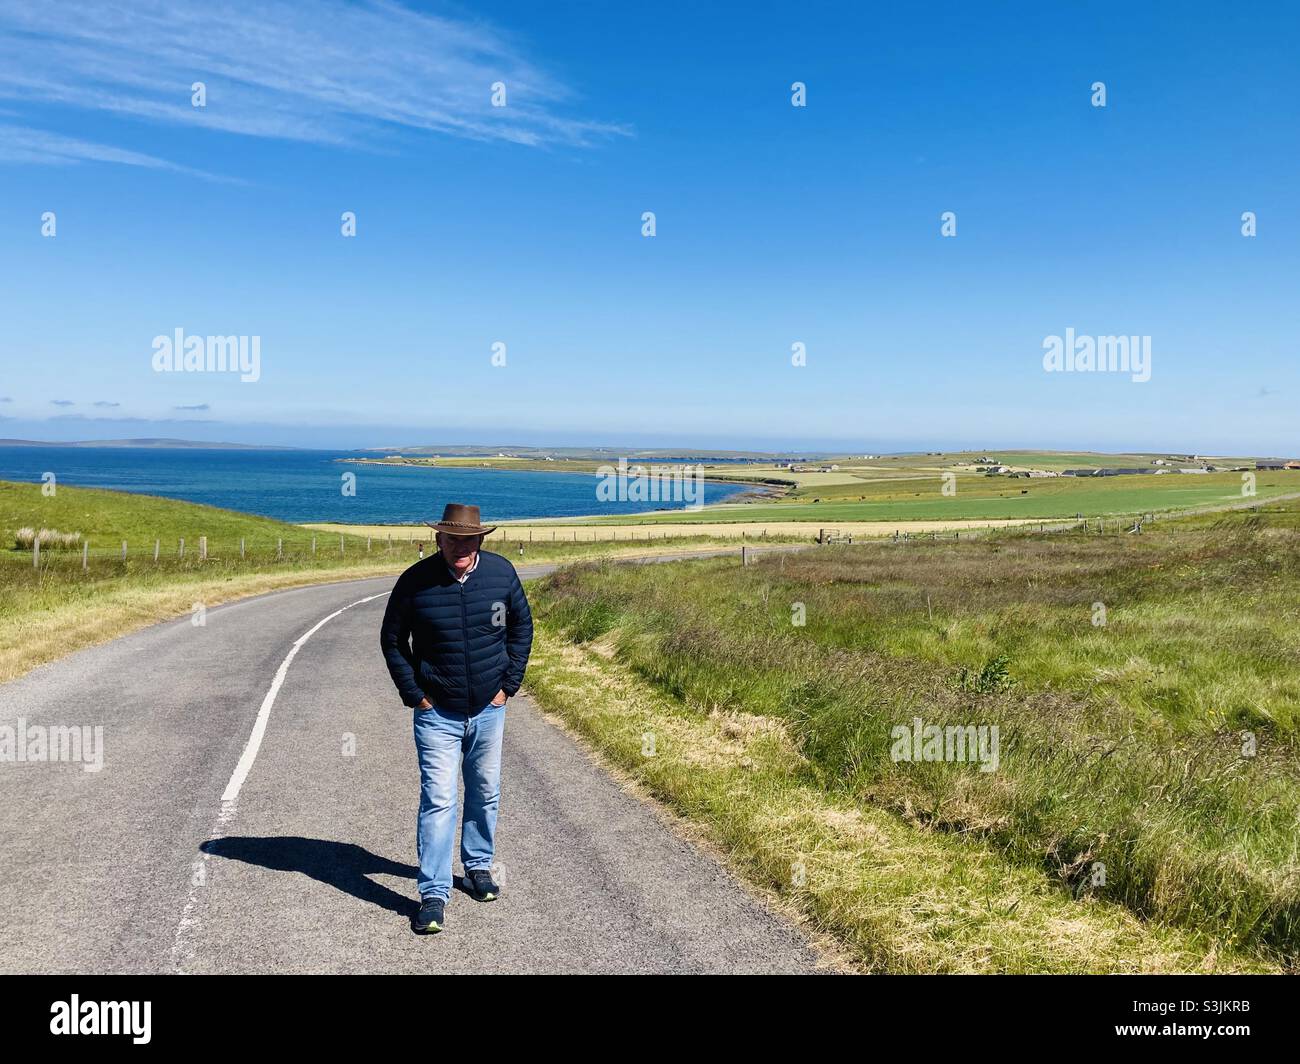 Mann, der auf einer Straße auf Flotta, Orkney, läuft. Insel Flotta im Hintergrund und scapa Fluss. Schottland Stockfoto